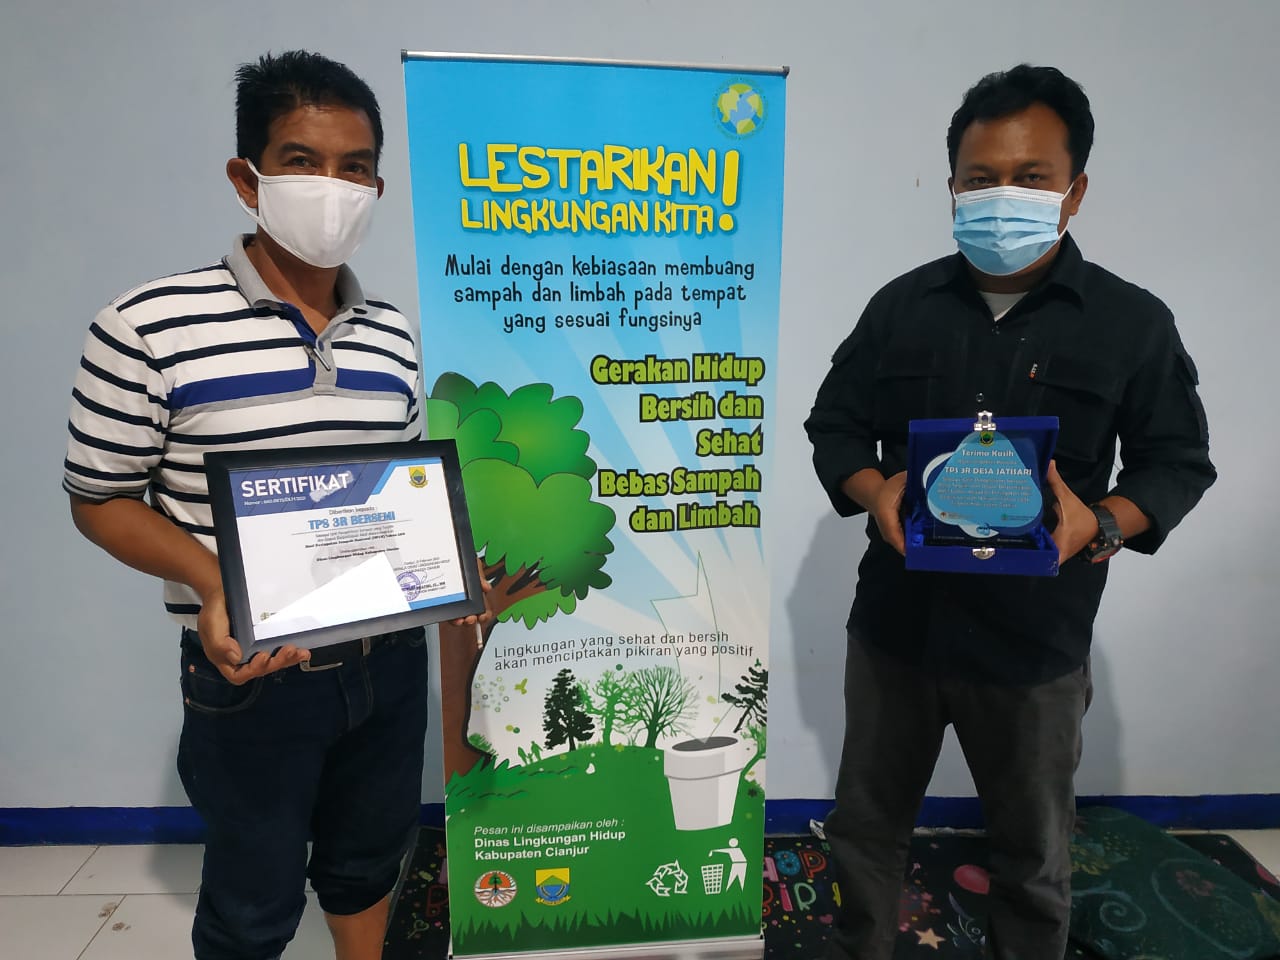 TPS 3 R Bersemi Jatisari  Terima Penghargaan Dinas Lingkungan